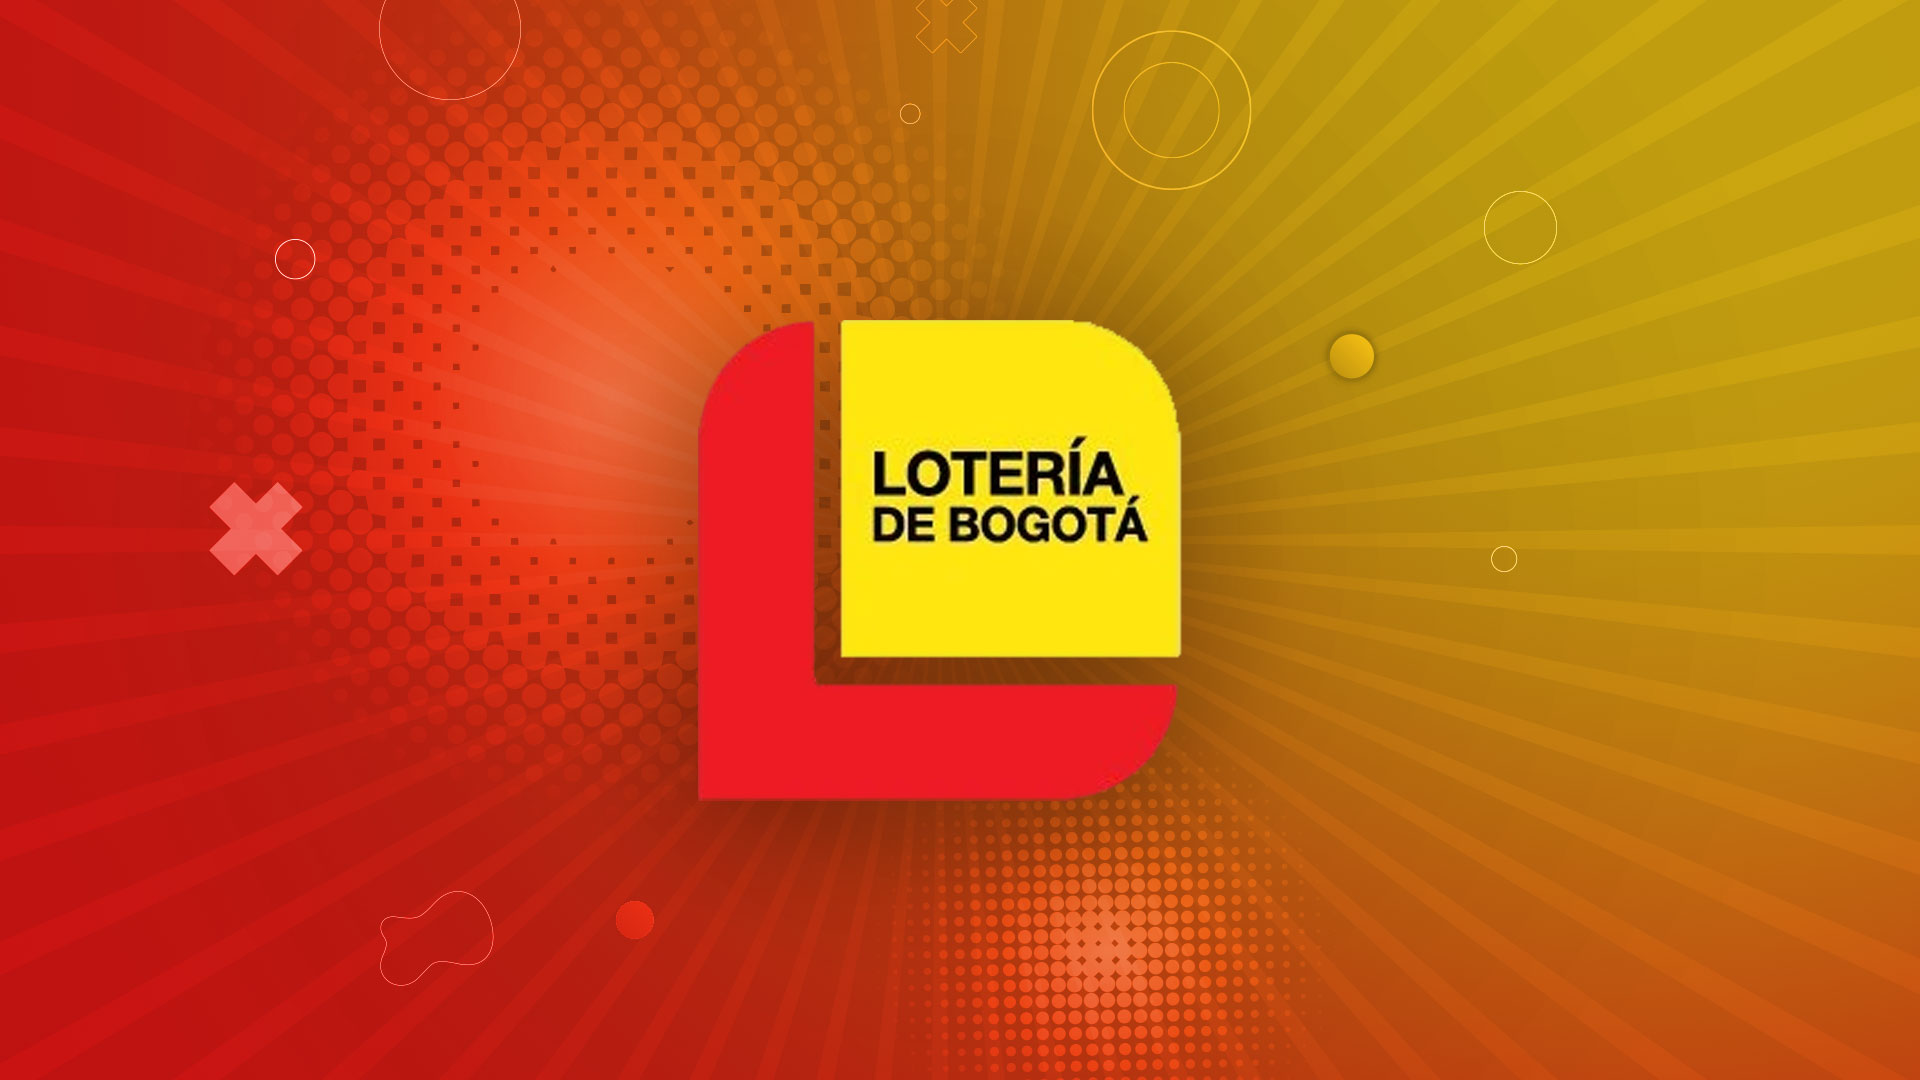 La Lotería de Bogotá lleva a cabo un sorteo a la semana, todos los jueves (Infobae/Jovani Pérez)